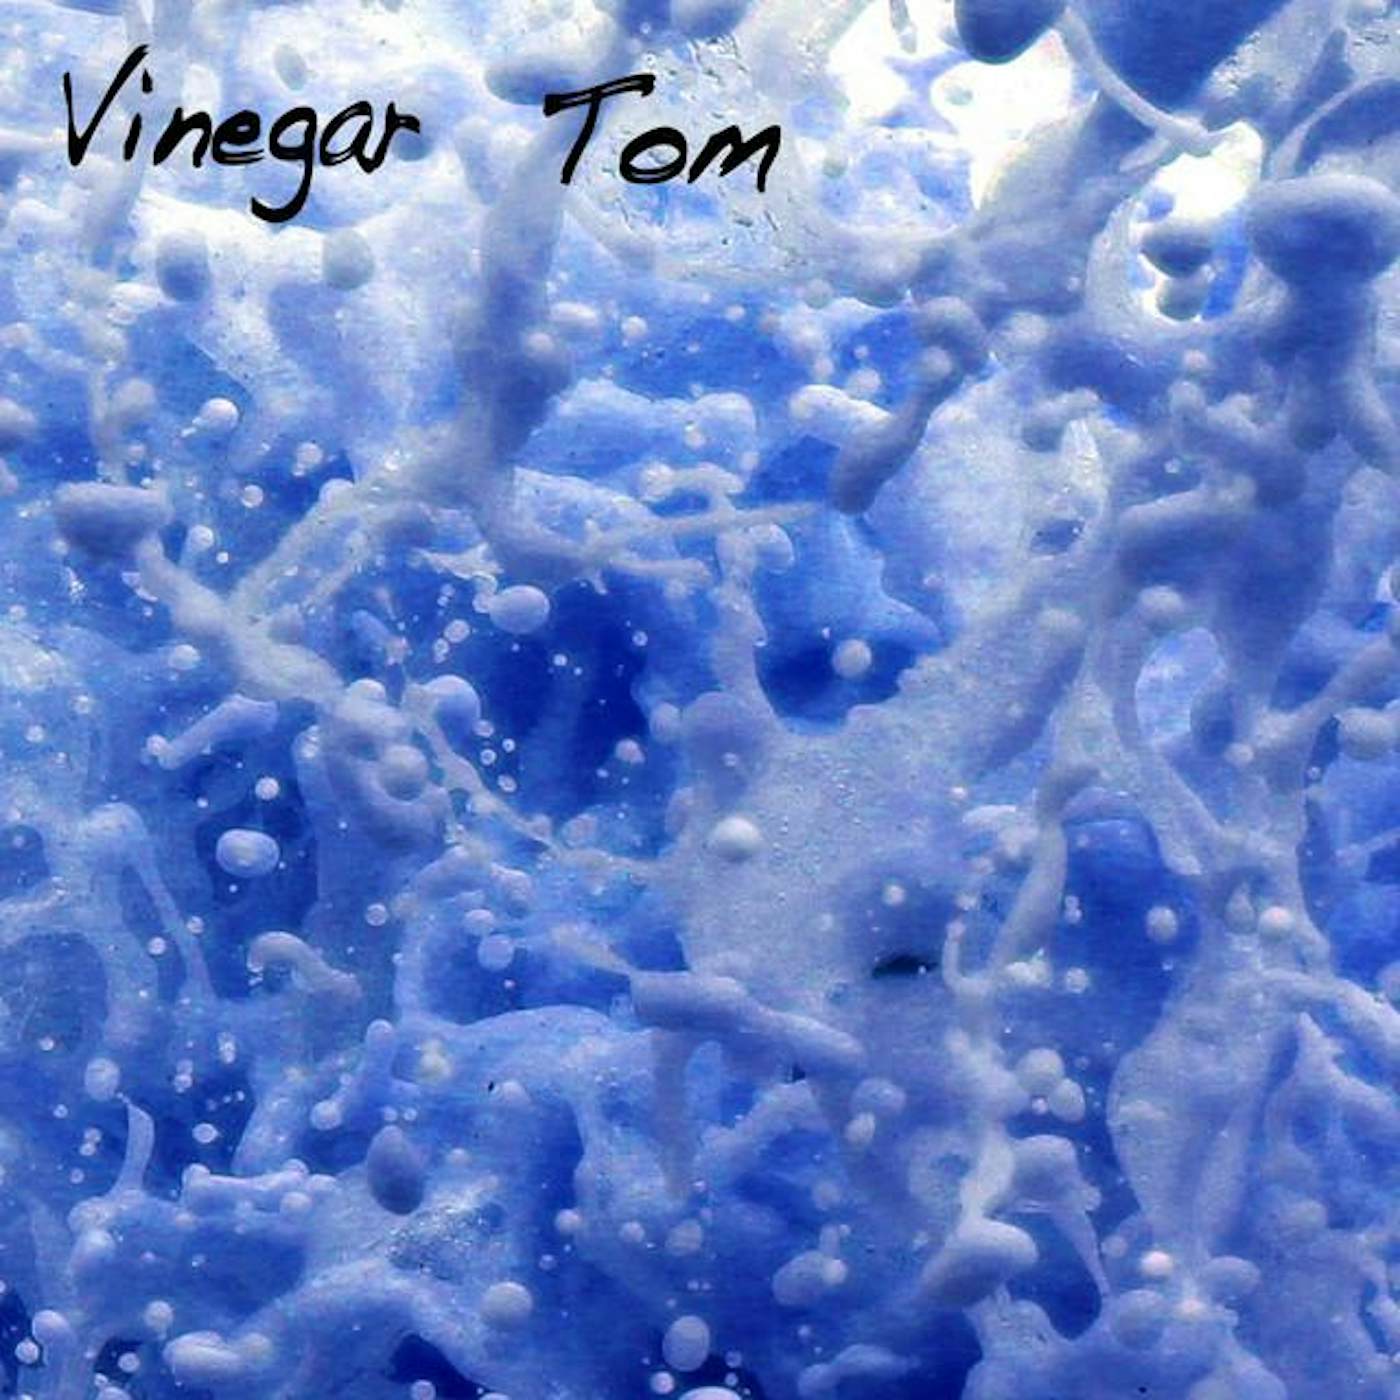 Vinegar Tom